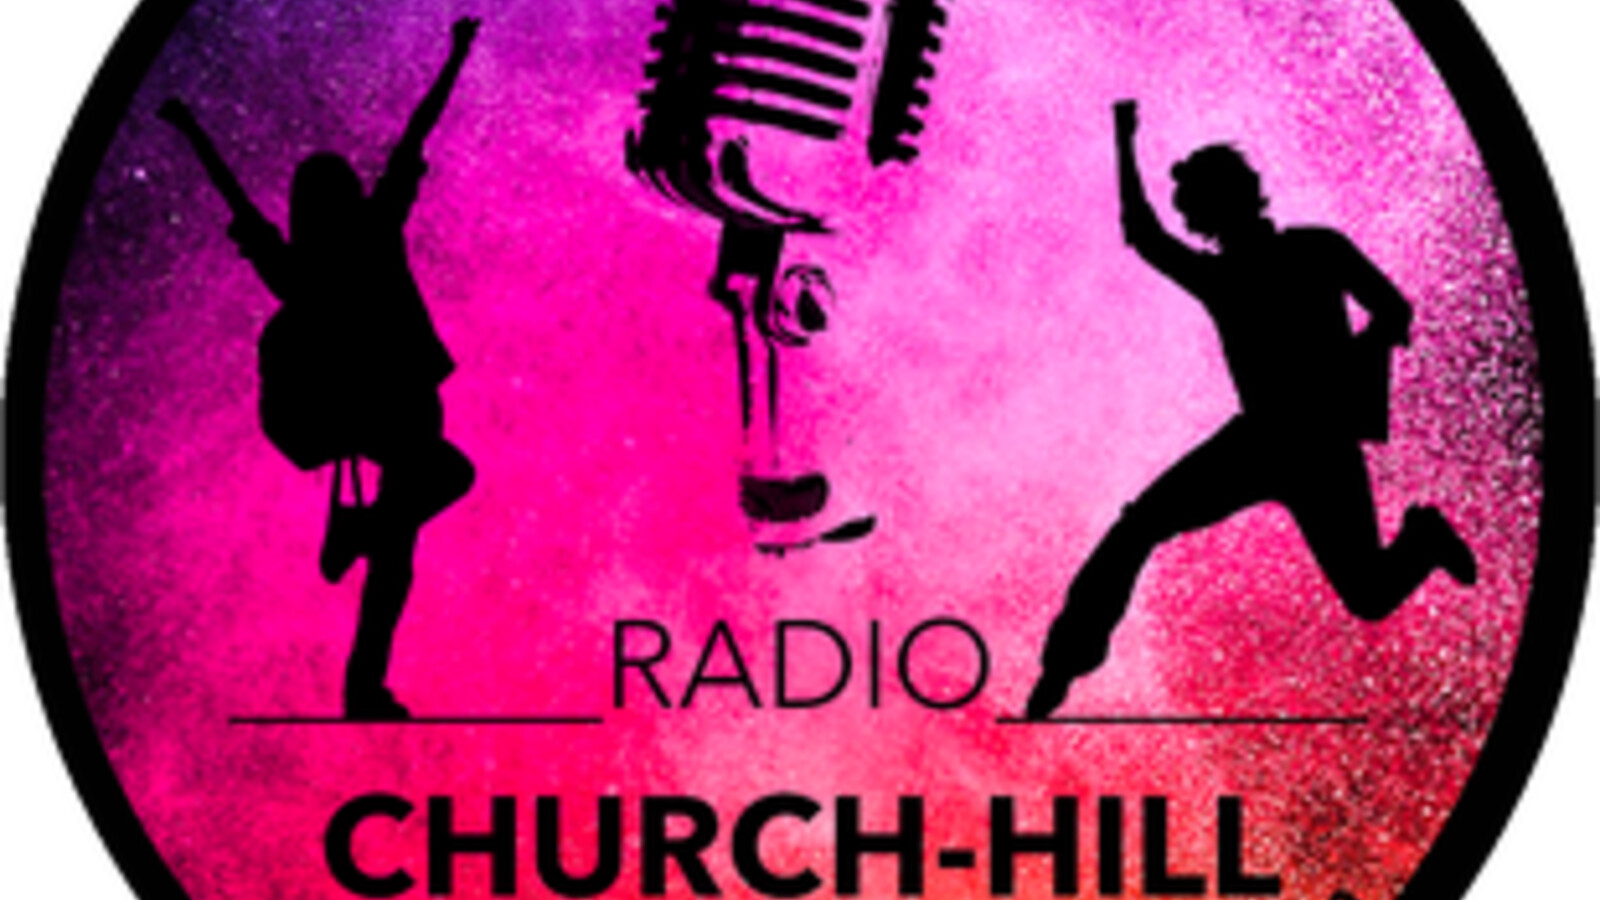 RADIO CHURCH-HILL hat Begeisterung ausgelöst